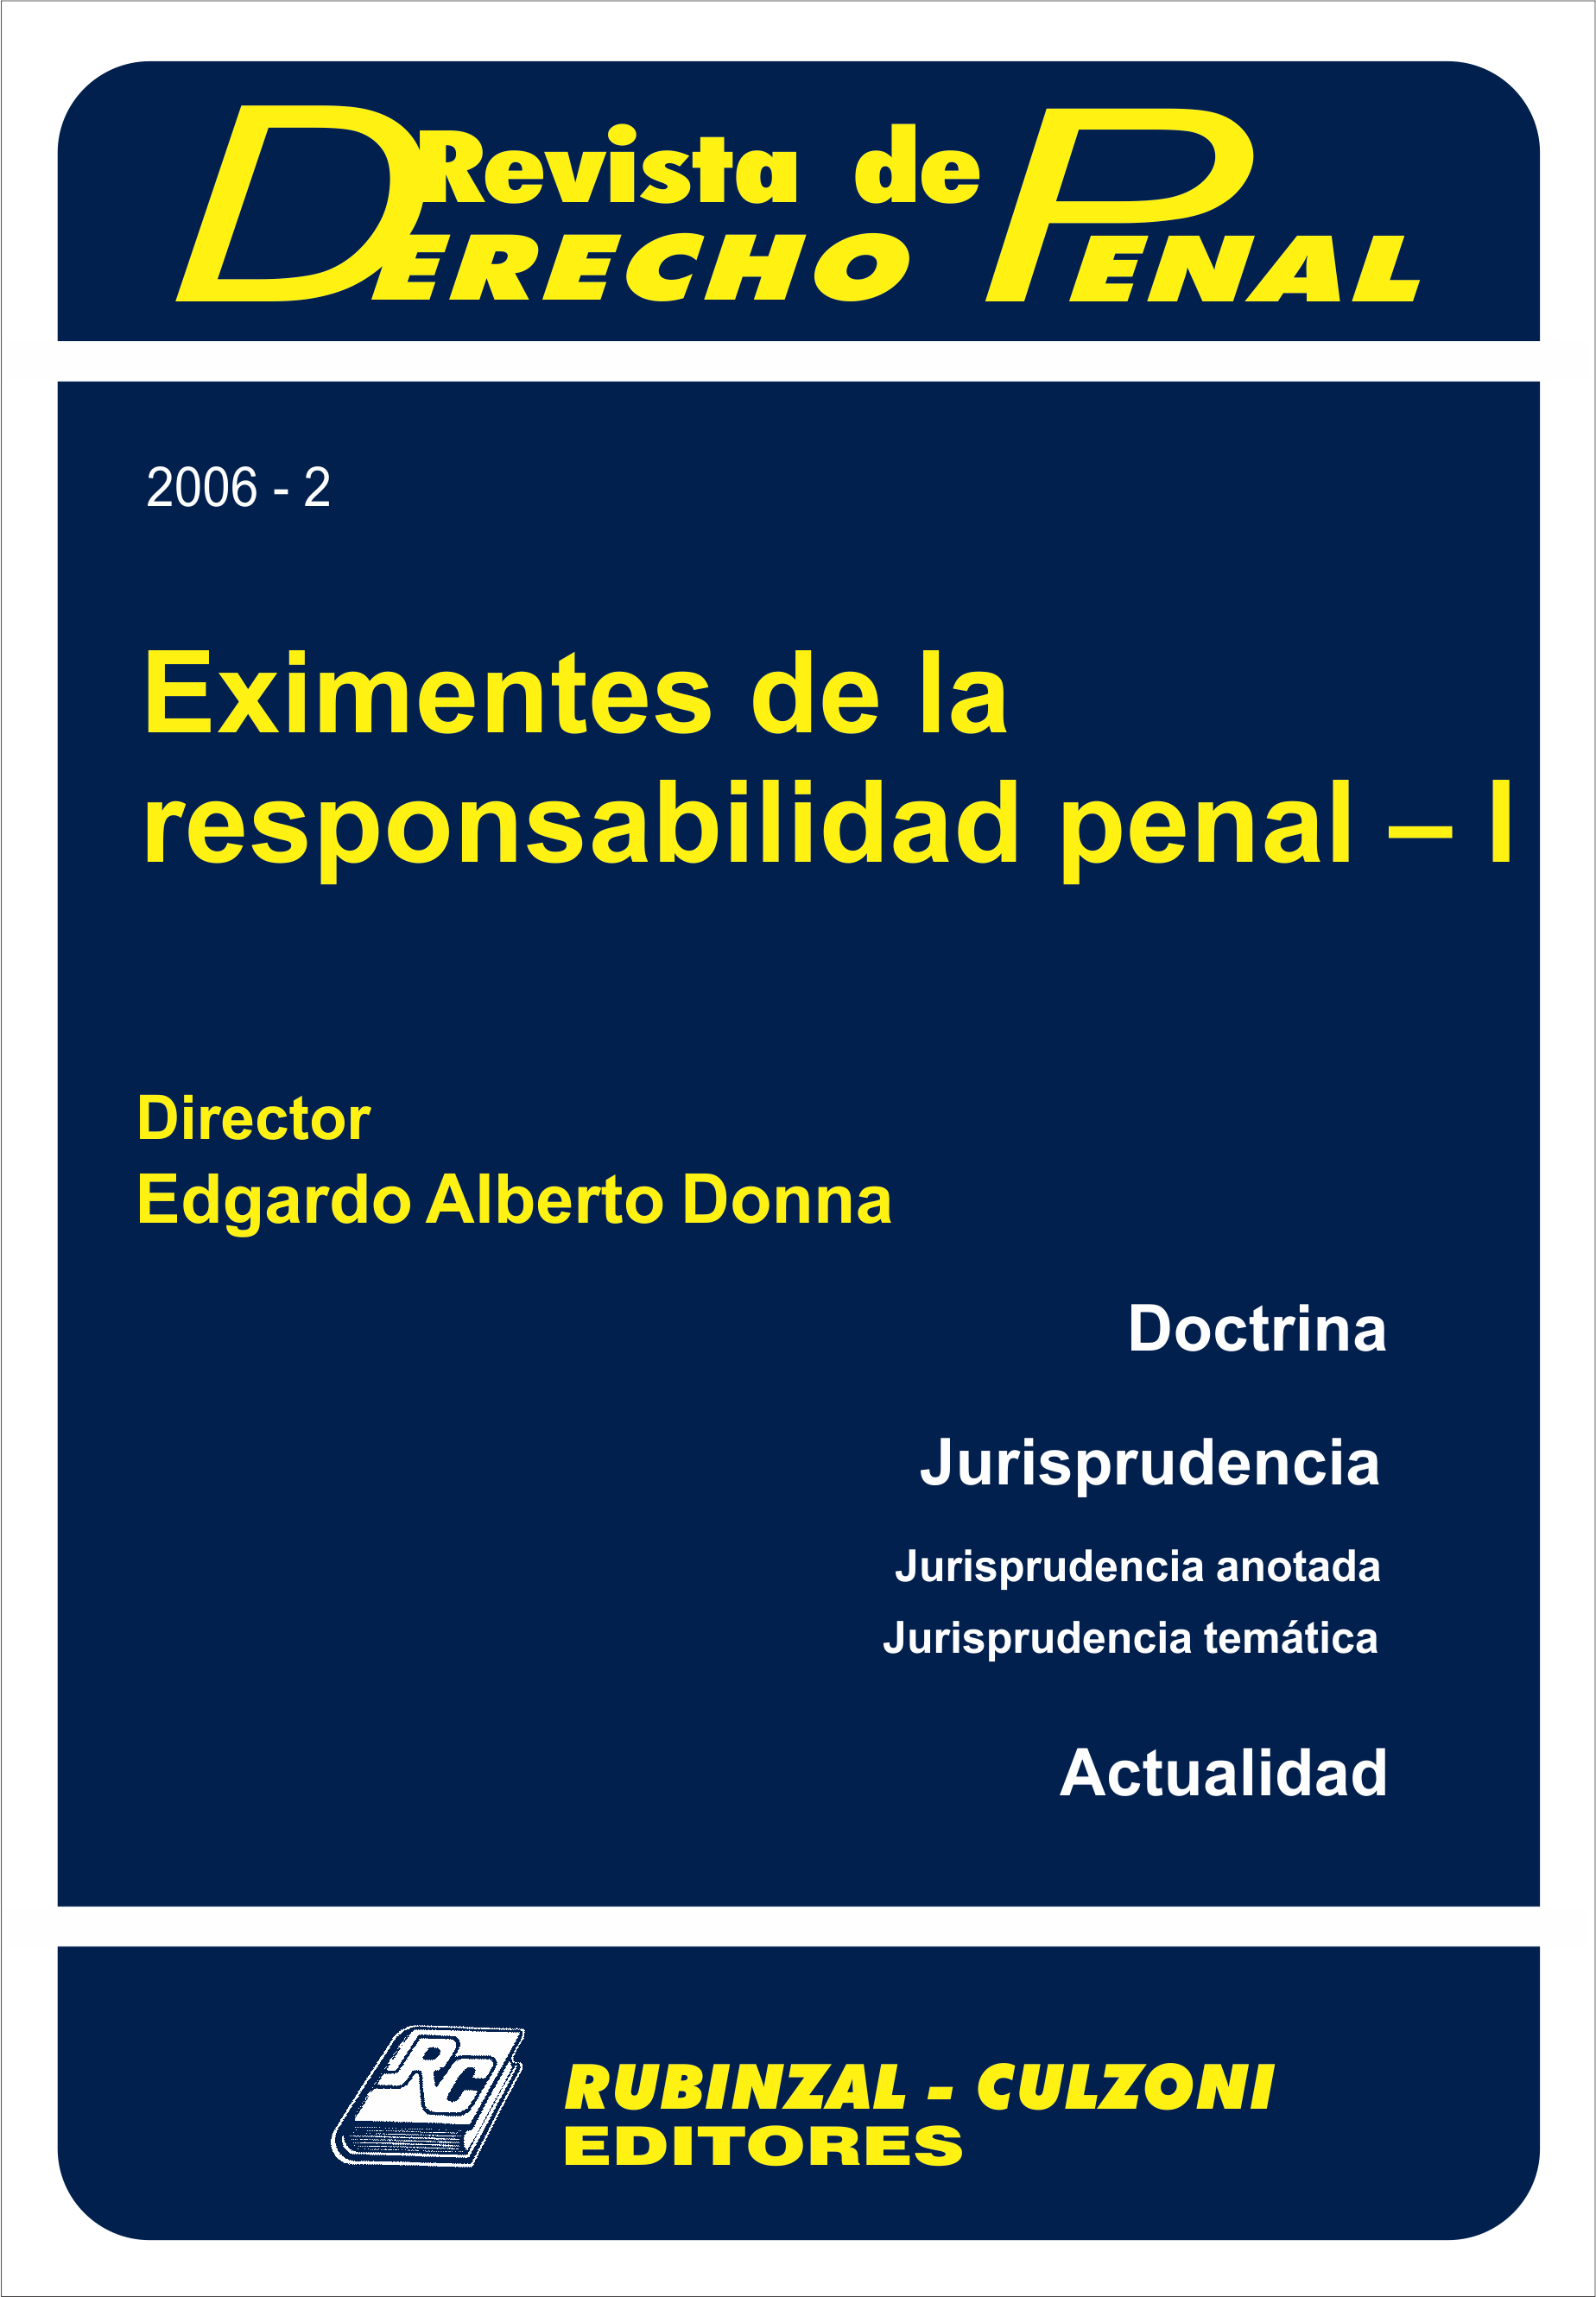 Revista de Derecho Penal - Eximentes de la responsabilidad penal - I